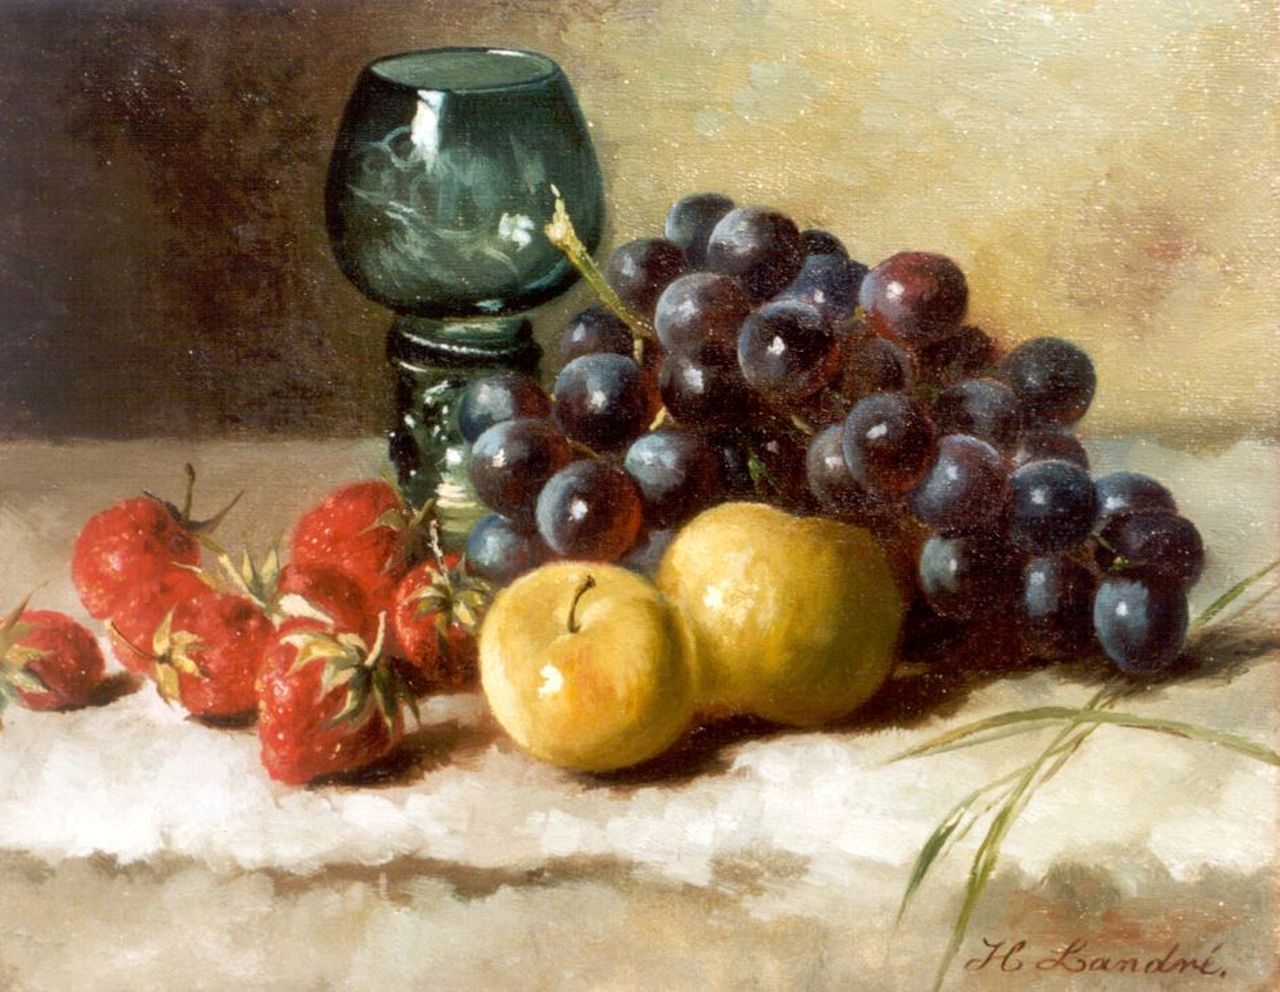 Landré-van der Kellen H.W.  | Hendrika Wilhelmina Landré-van der Kellen, A still life with grapes and strawberries, Öl auf Leinwand 25,0 x 31,0 cm, signed l.r.